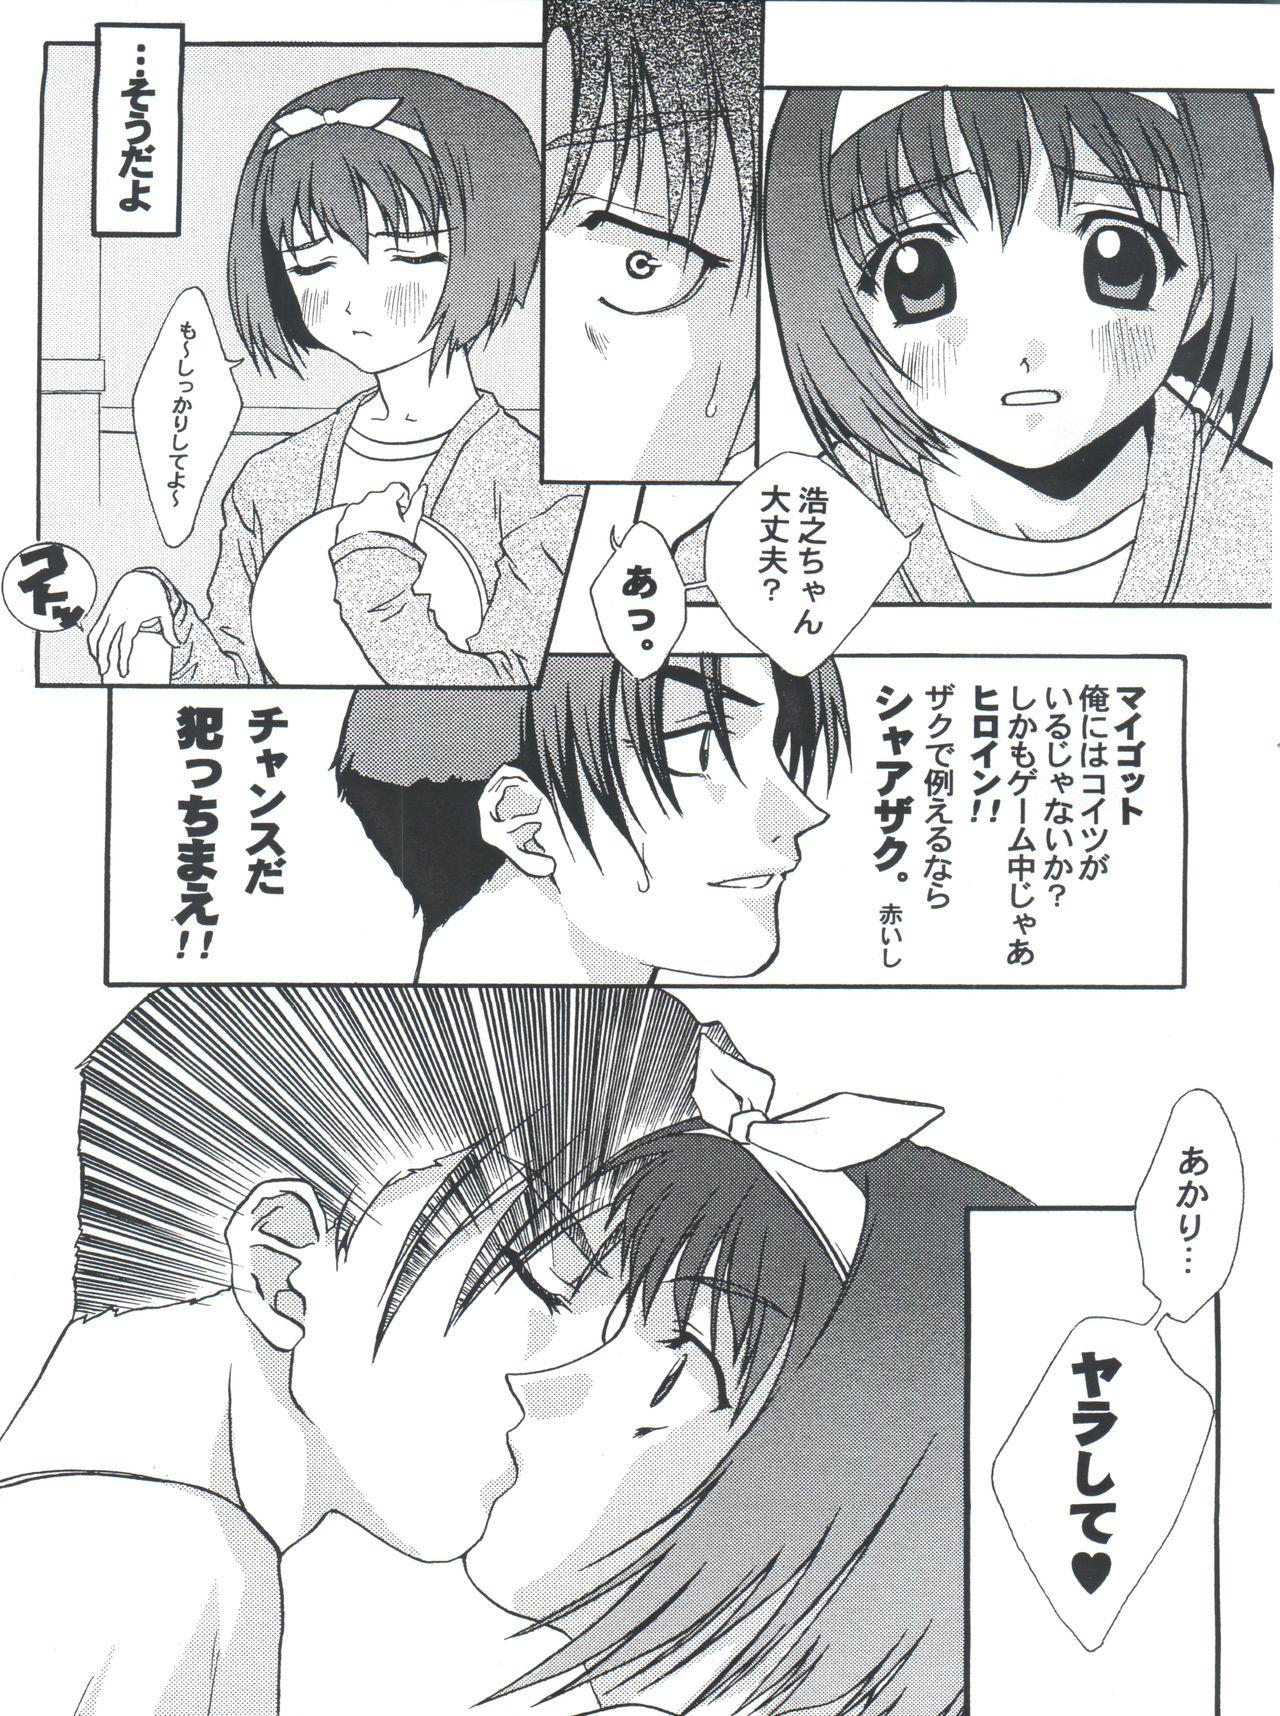 Crazy Nani? - Sakura taisen To heart Jeans - Page 7